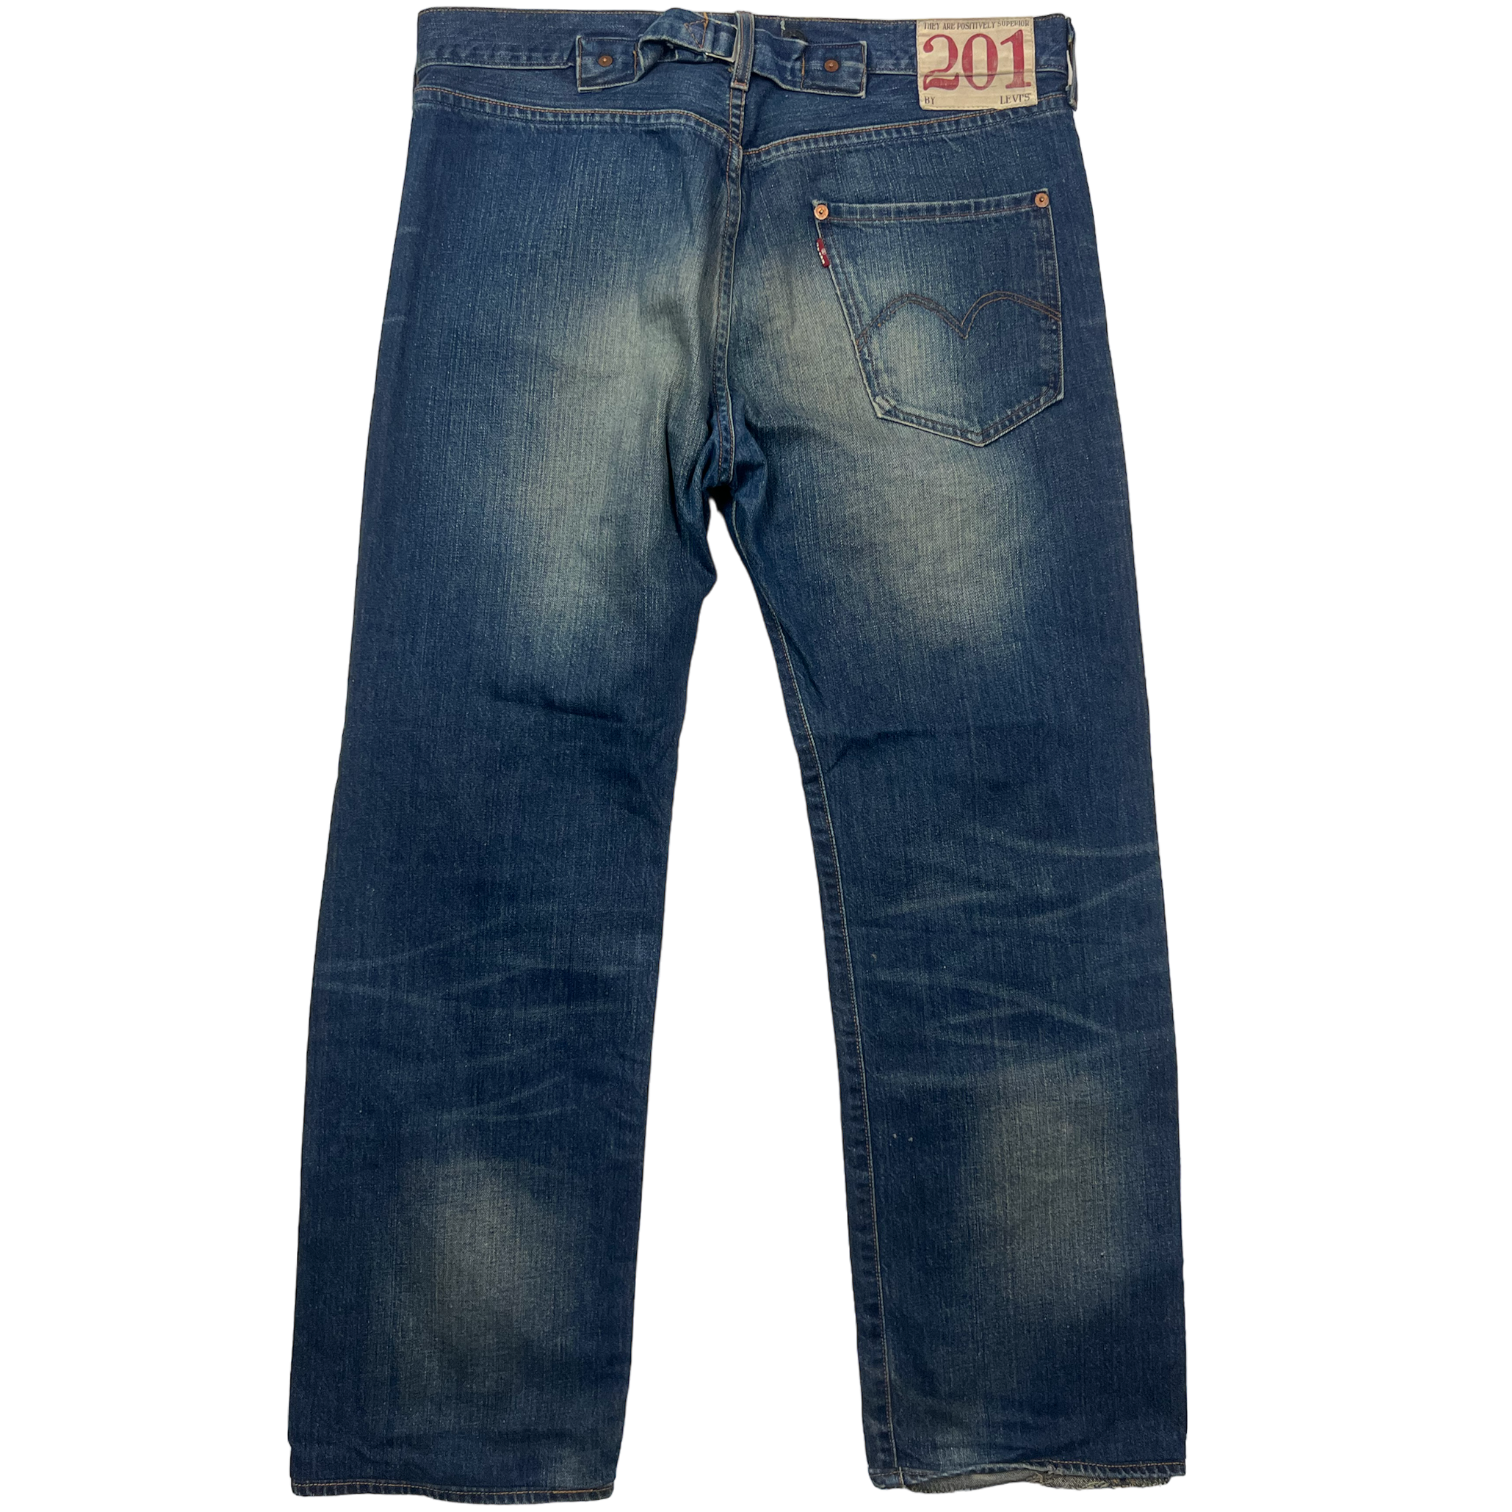 Levis 201 Loose Jeans (34)